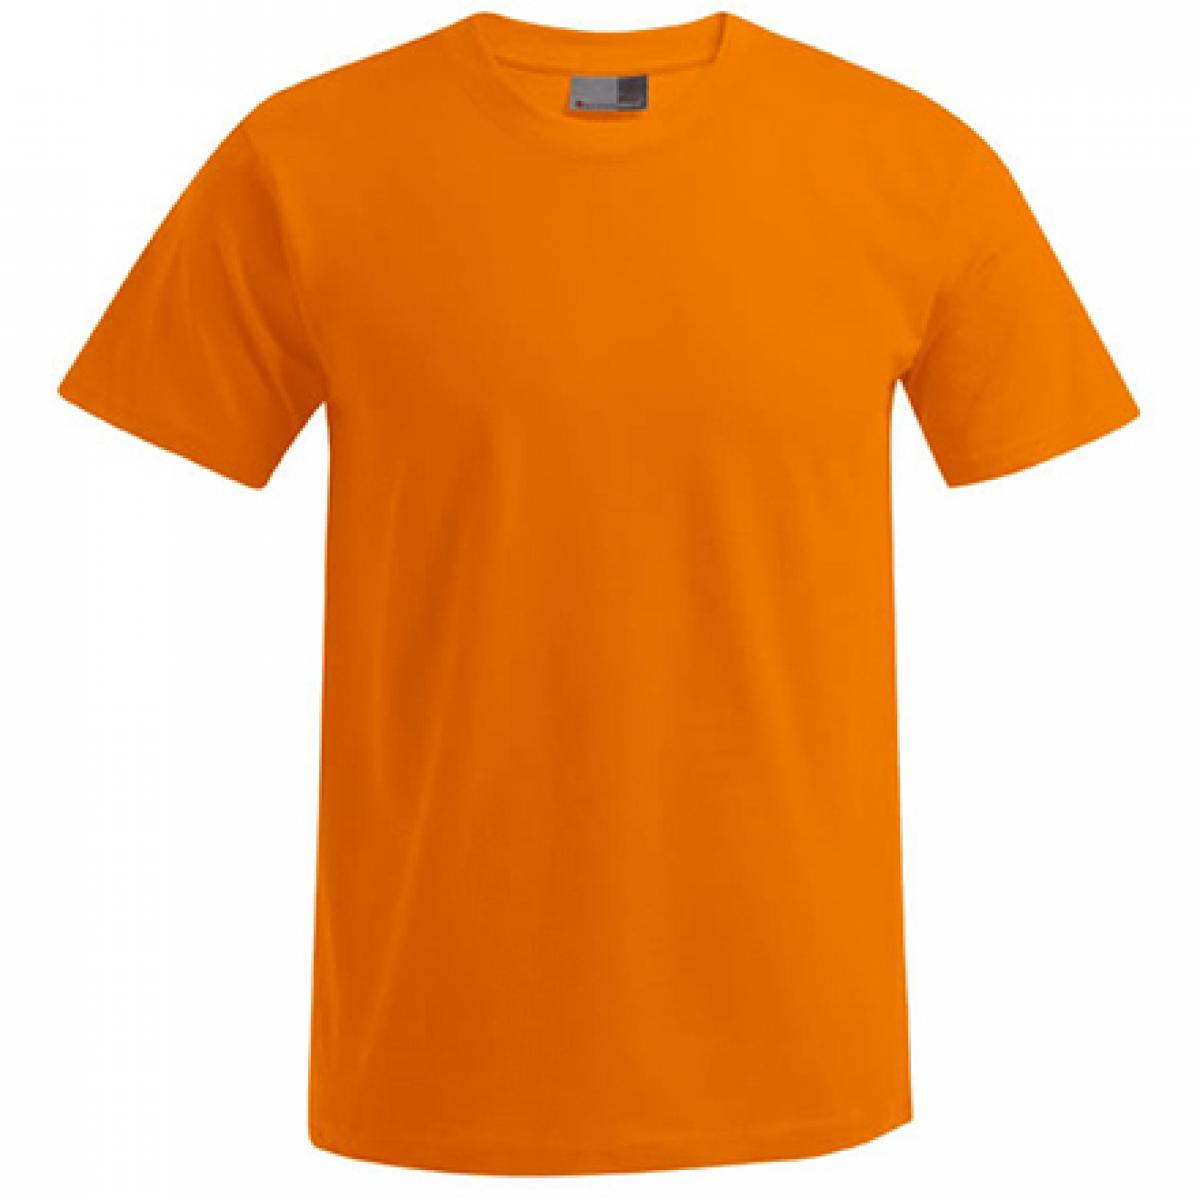 Hersteller: Promodoro Herstellernummer: 3000/3099 Artikelbezeichnung: Men´s Premium Herren T-Shirt - bis 5XL Farbe: Orange